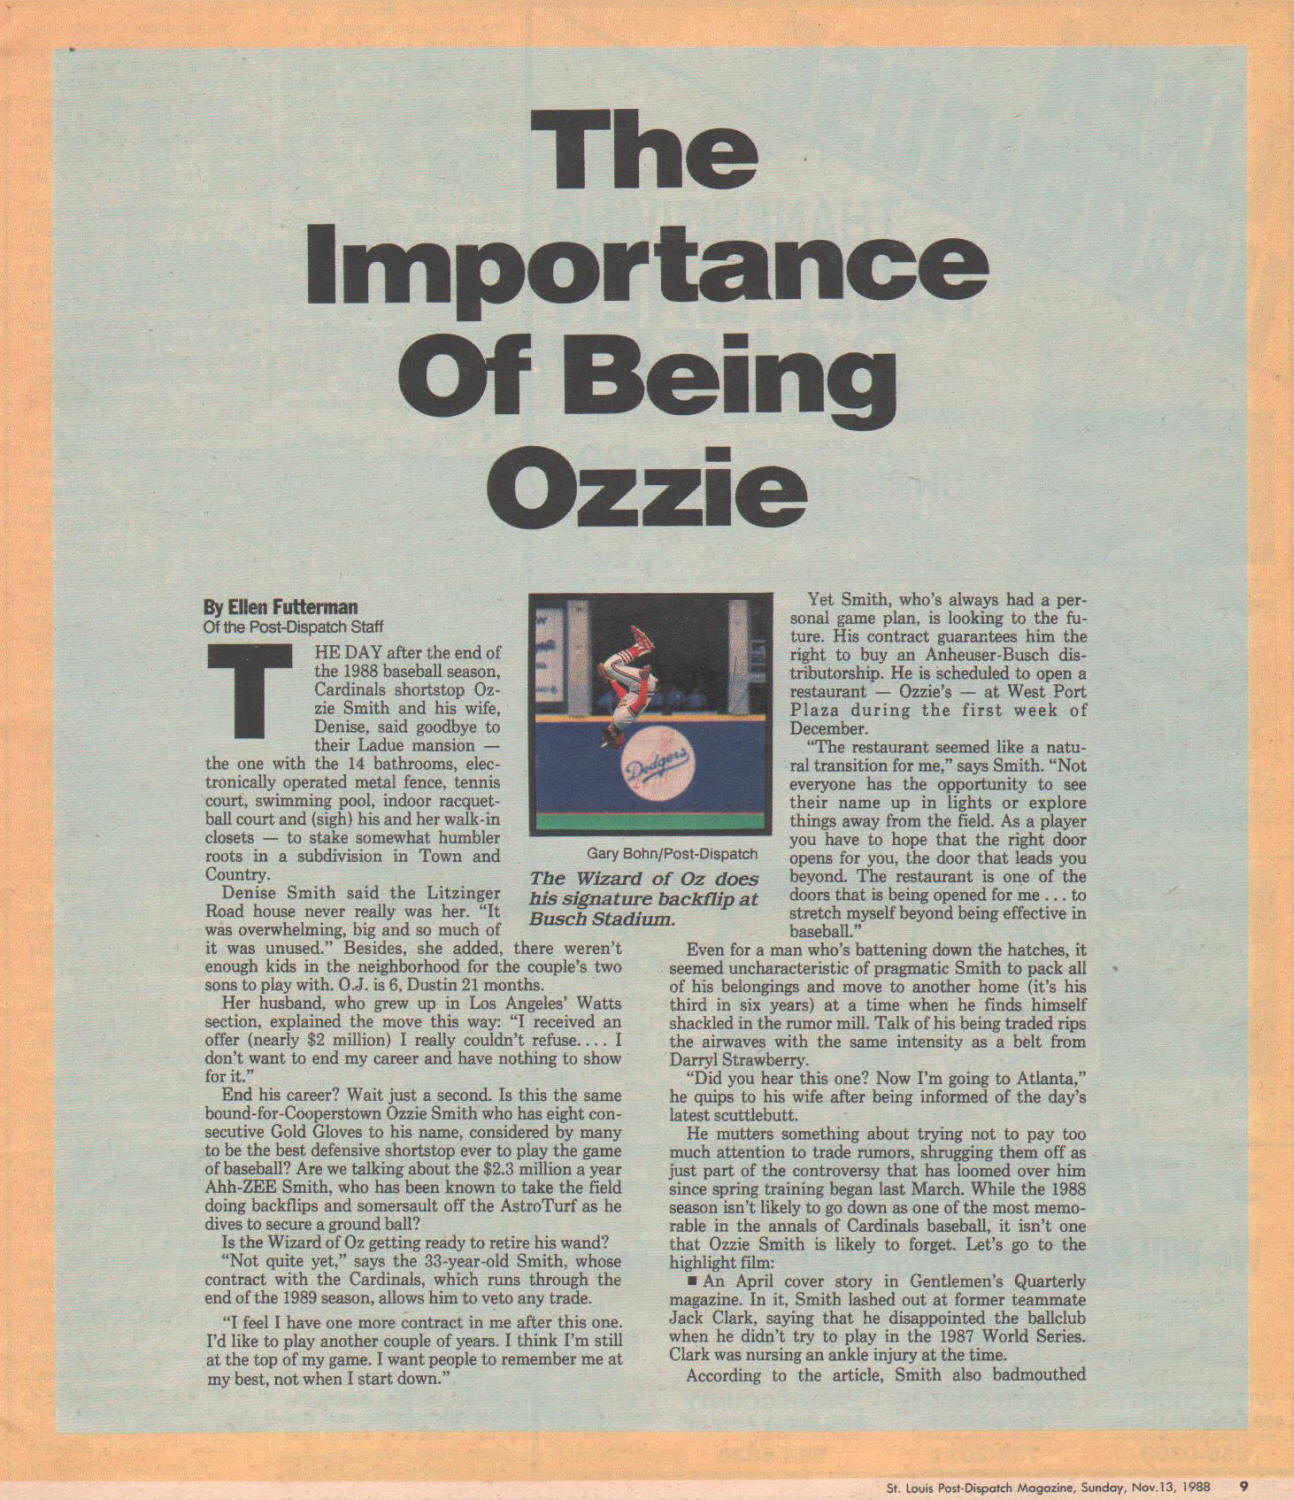 St. Louis Post-Dispatch Magazine - Ozzie Smith - 11/13/88